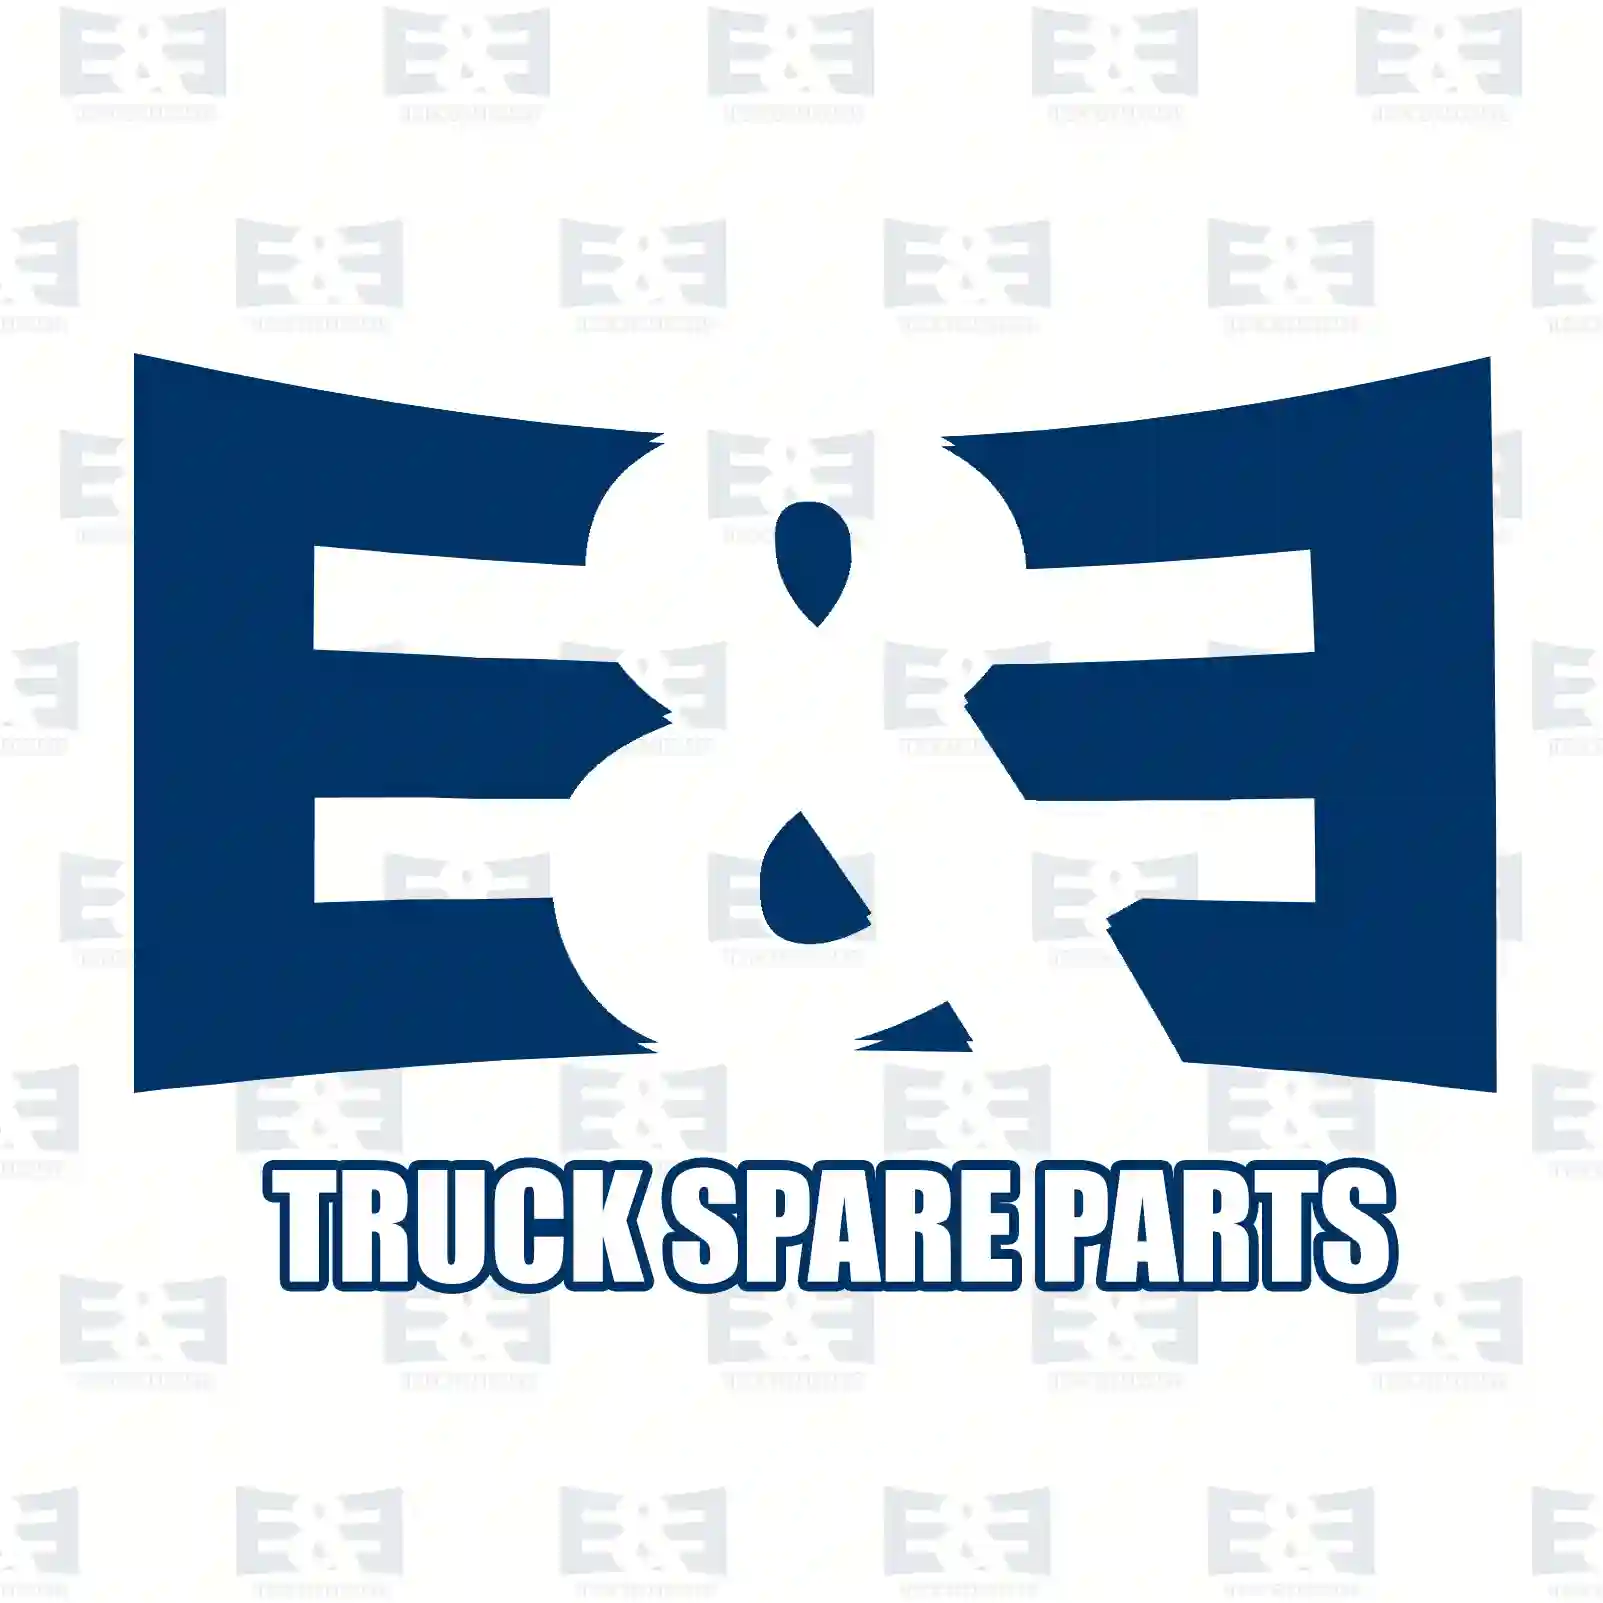 Hand brake valve, 2E2294778, 1389075, 1389075R ||  2E2294778 E&E Truck Spare Parts | Truck Spare Parts, Auotomotive Spare Parts Hand brake valve, 2E2294778, 1389075, 1389075R ||  2E2294778 E&E Truck Spare Parts | Truck Spare Parts, Auotomotive Spare Parts